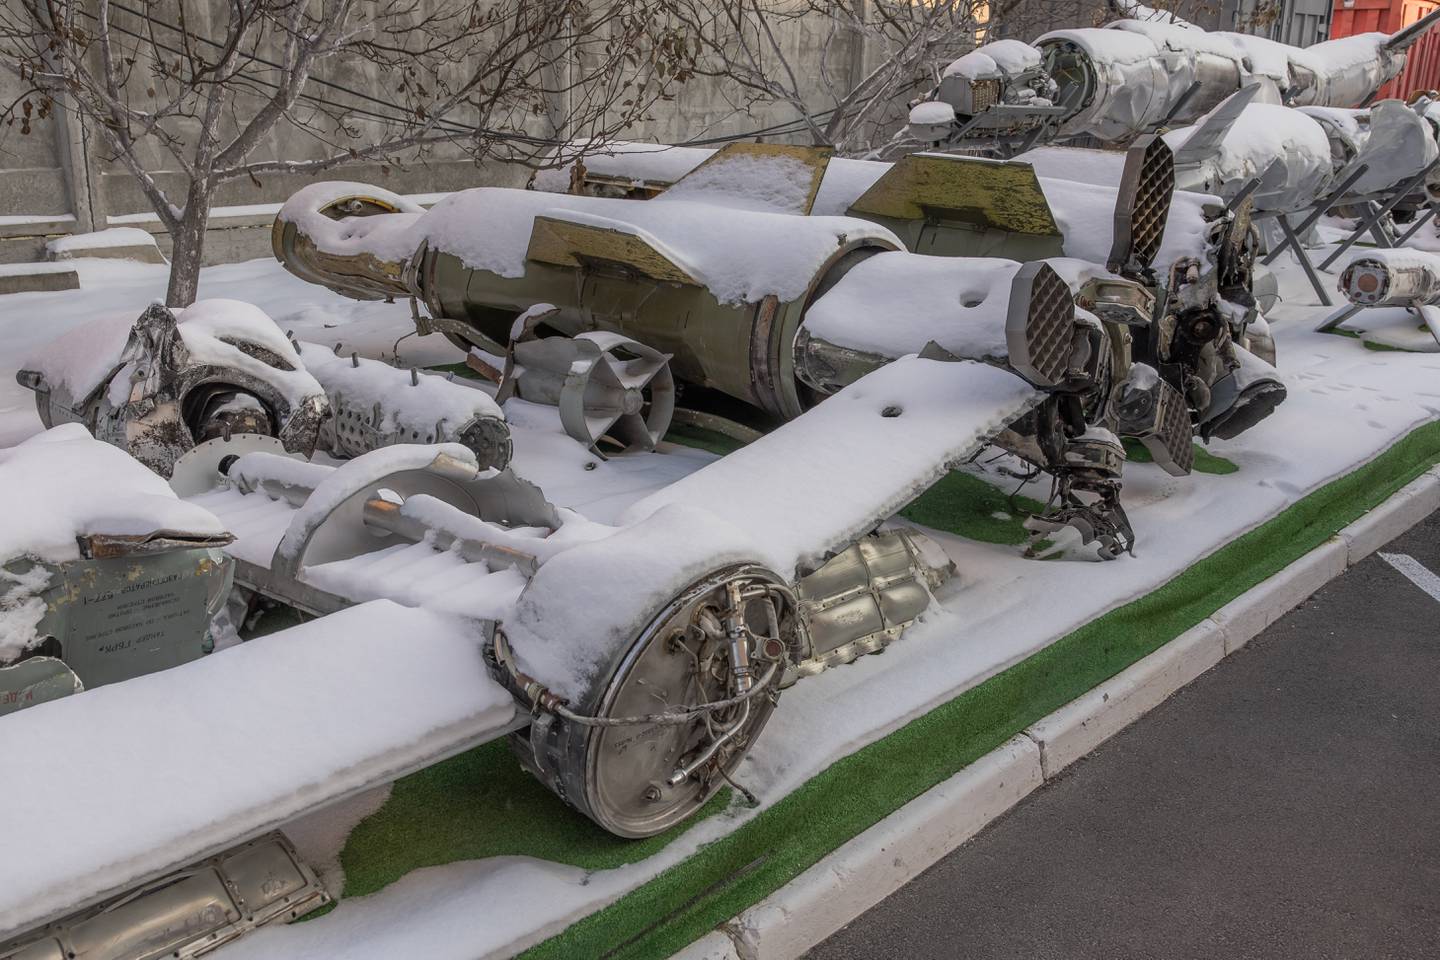 Restos parcialmente cubiertos de nieve de misiles interceptados, incluidos los misiles Tochka-U y Kalibr, lanzados contra Ucrania, en el Instituto de Investigación Científica de Pericia Forense de Kiev, en Kiev, en medio de la invasión rusa de Ucrania.